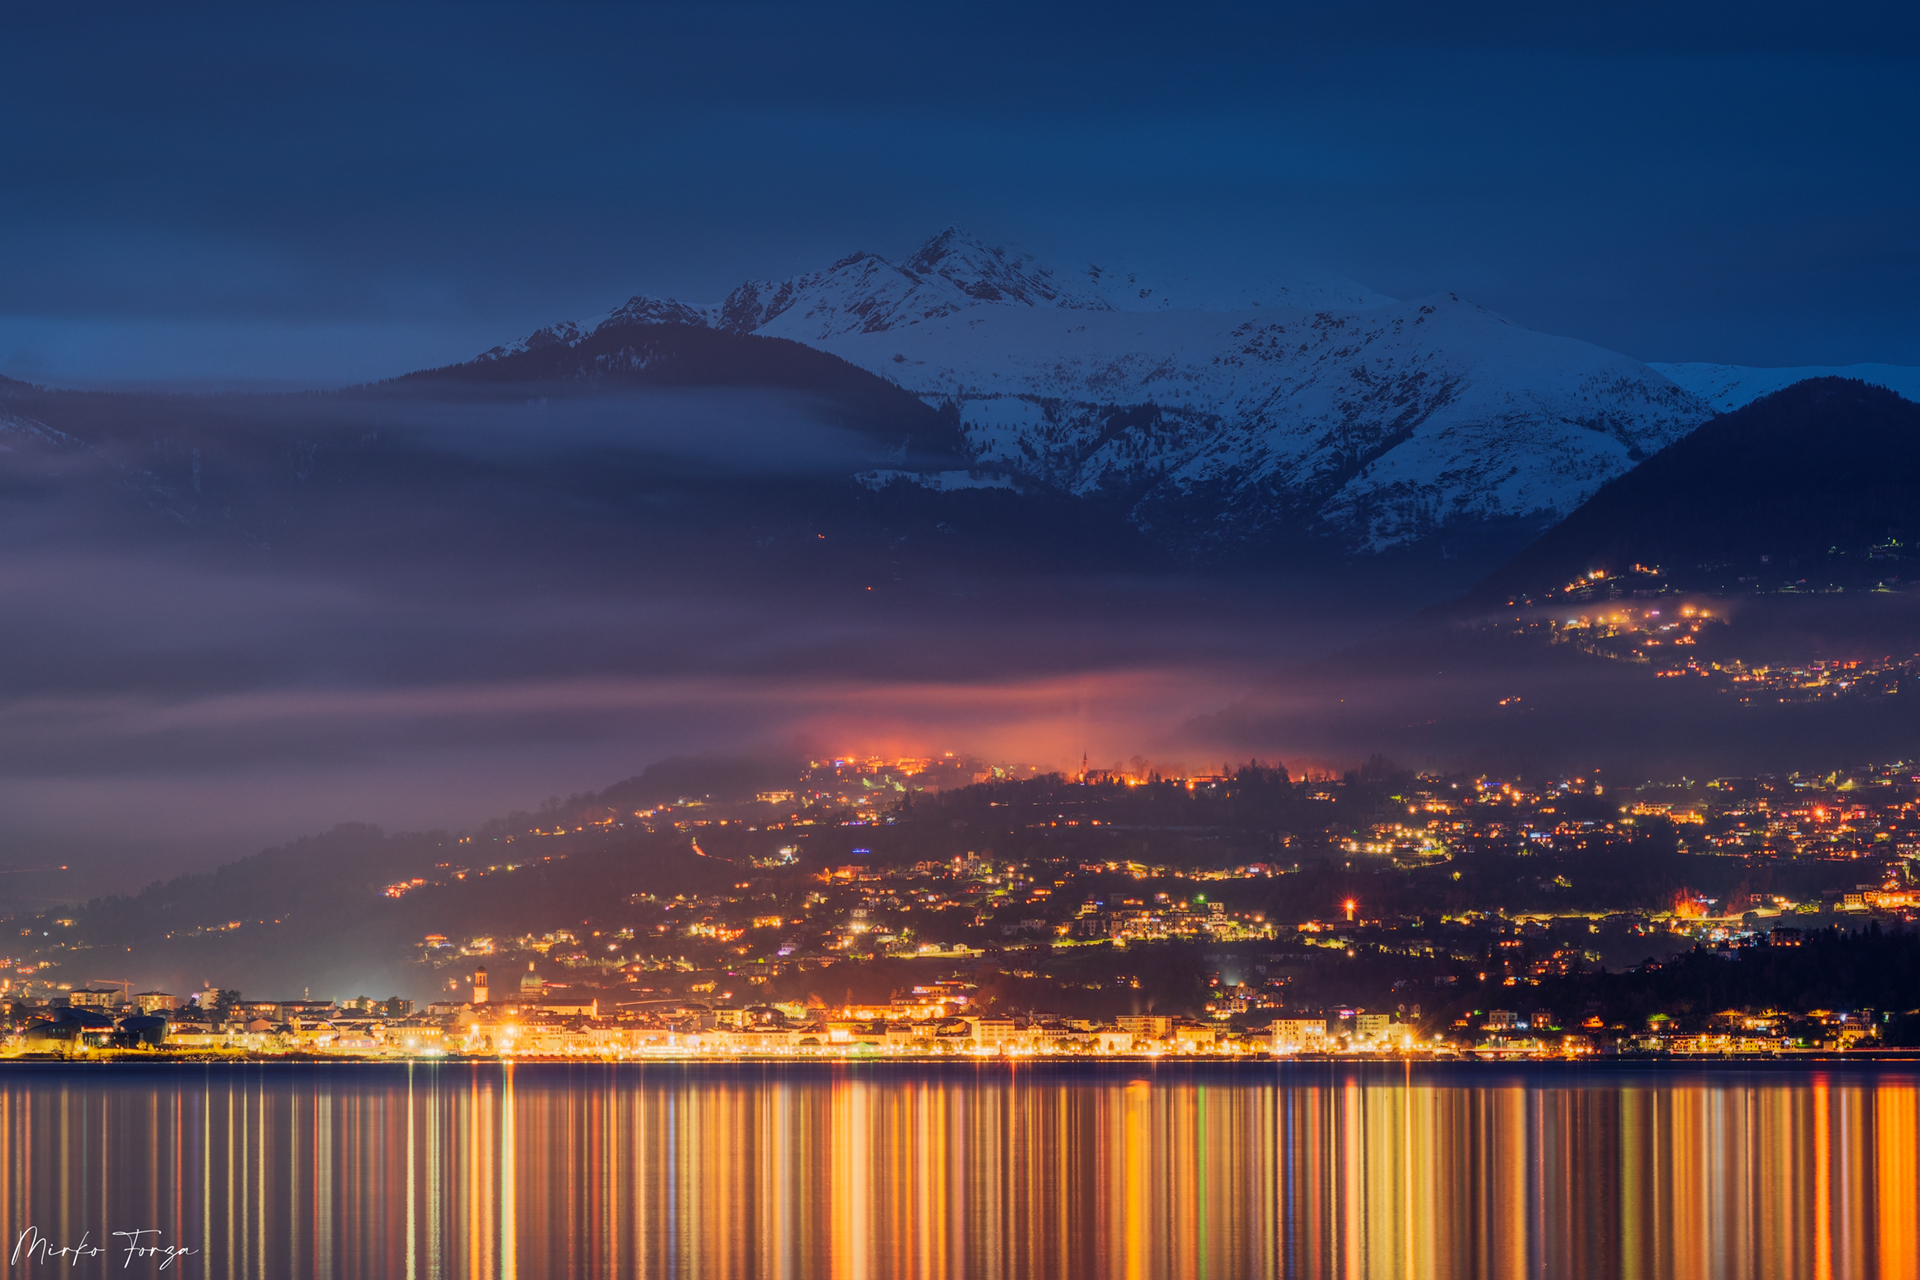 Luci e nebbie sul lago Maggiore....